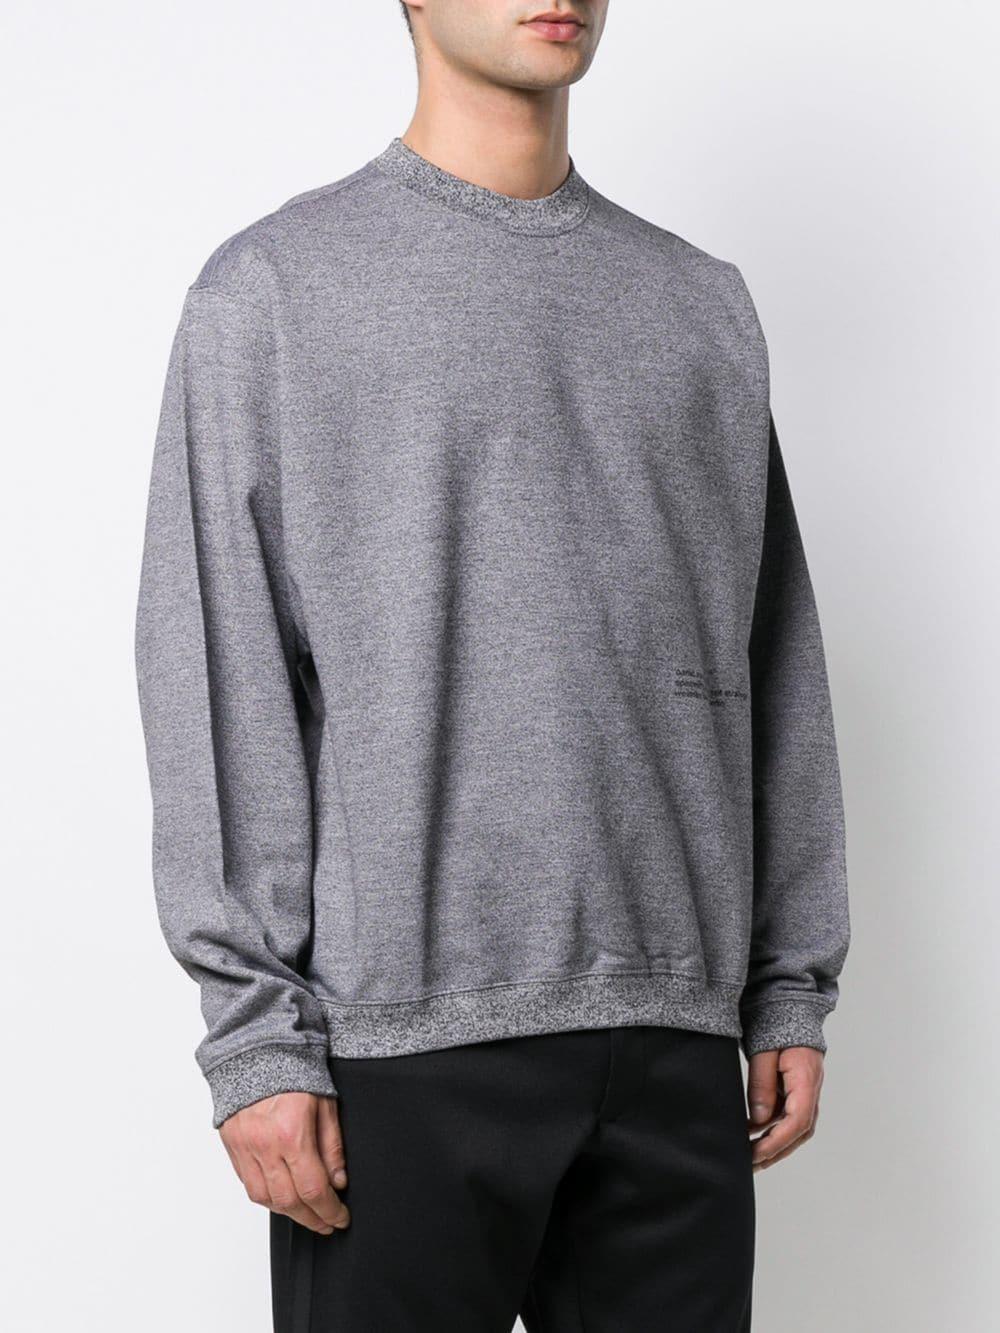 Lyst - OAMC Melange Crew Neck Sweatshirt in Gray for Men